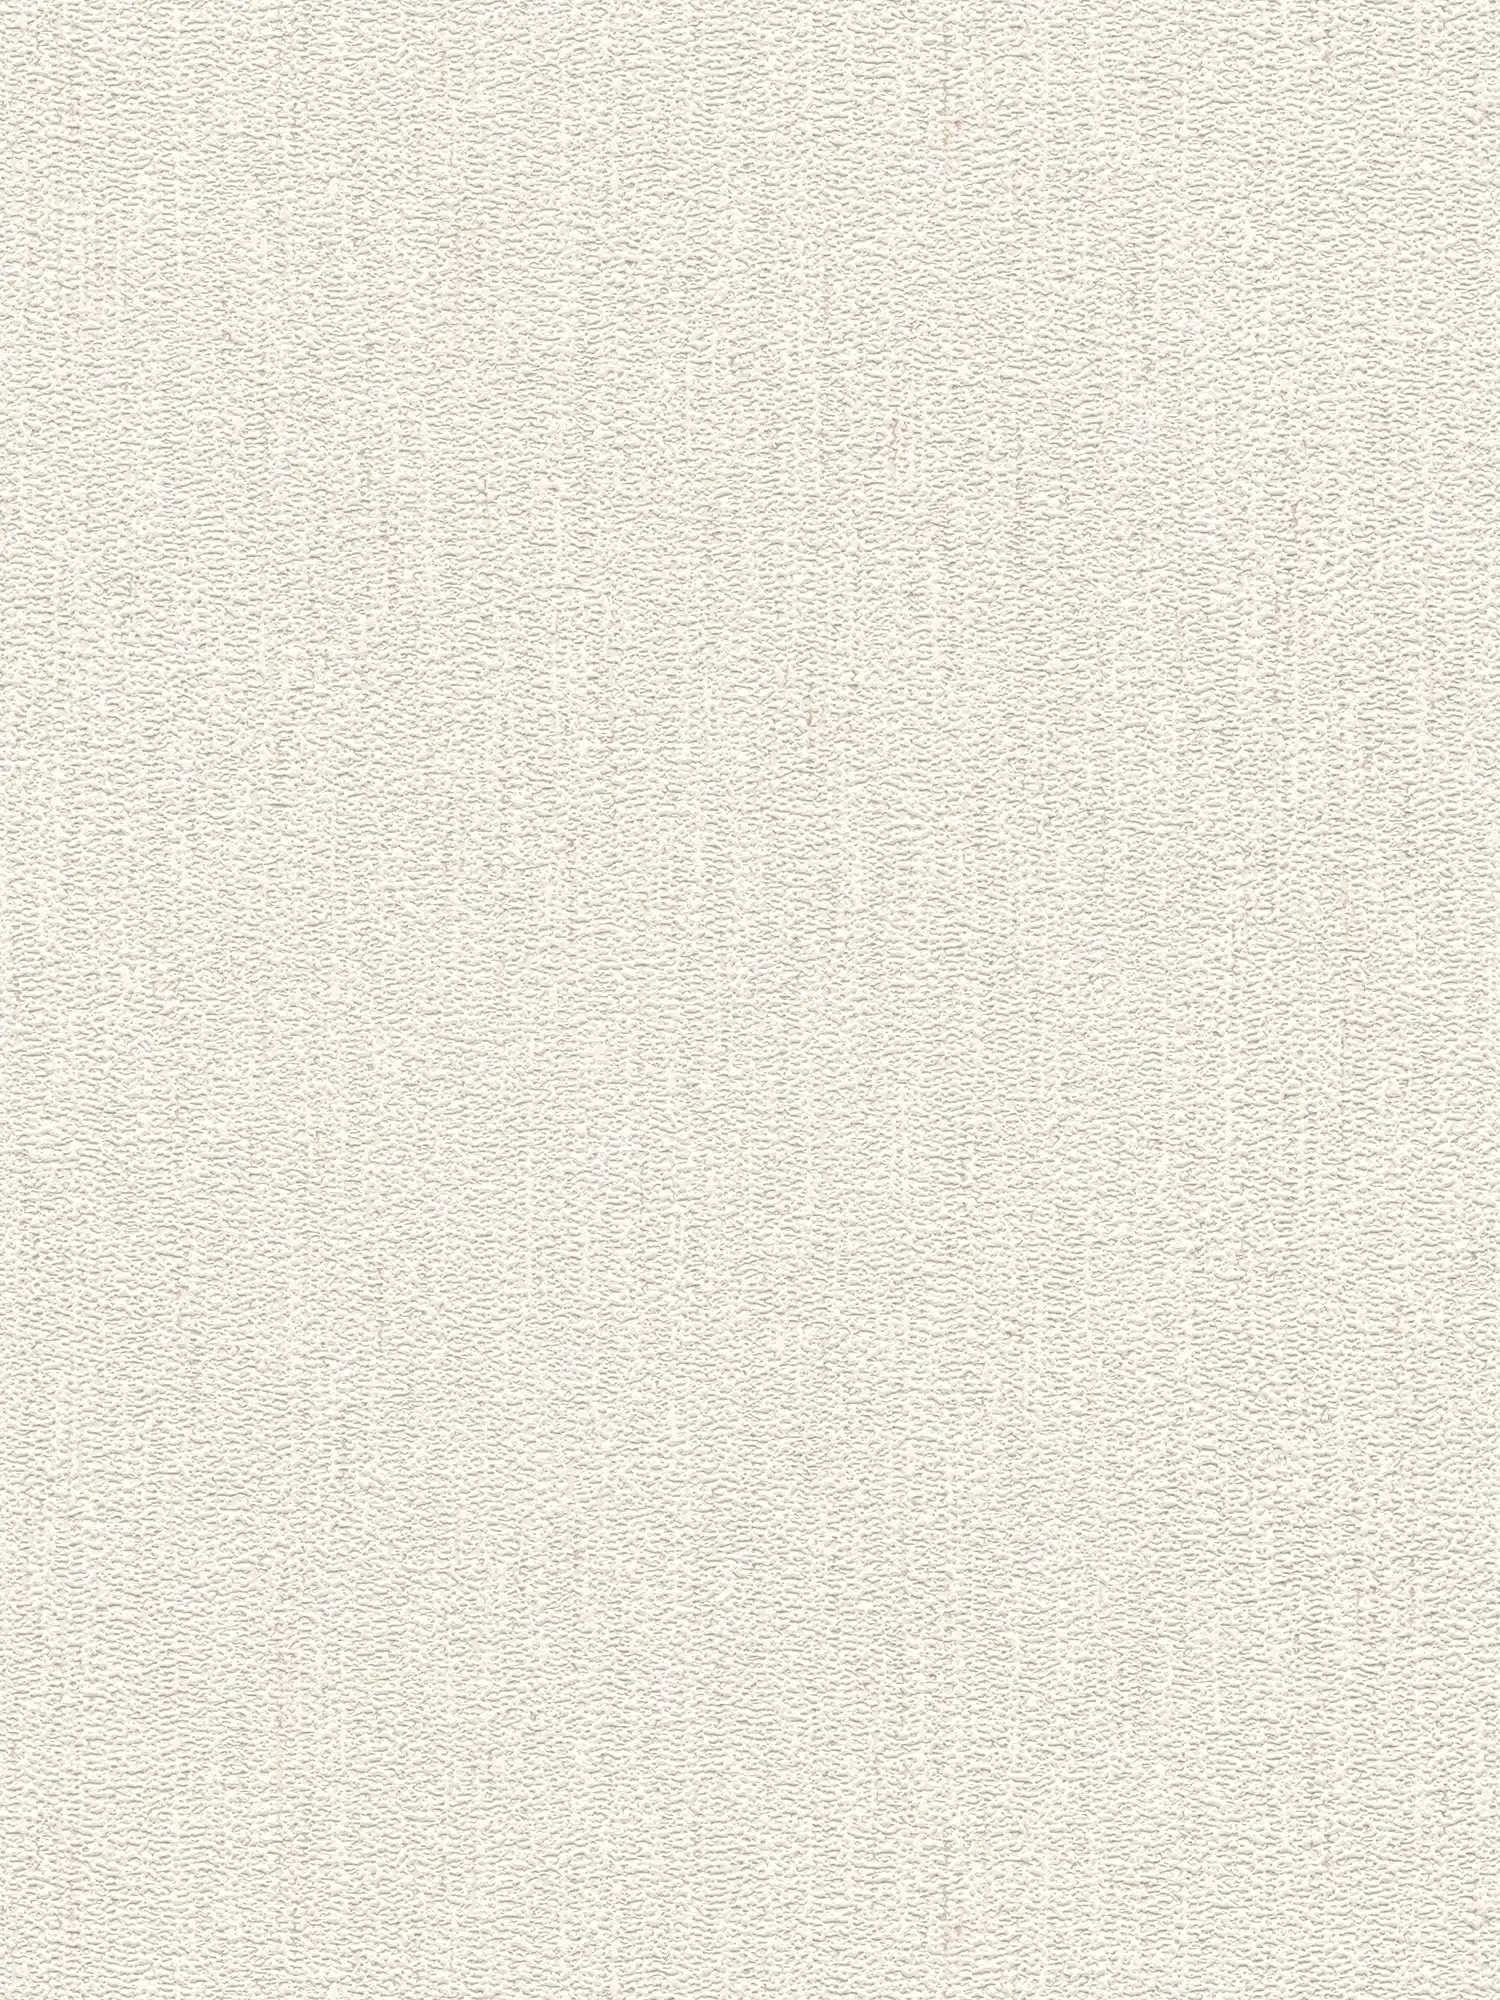             Papier peint intissé avec structure dans légèrement brillant - blanc, crème
        